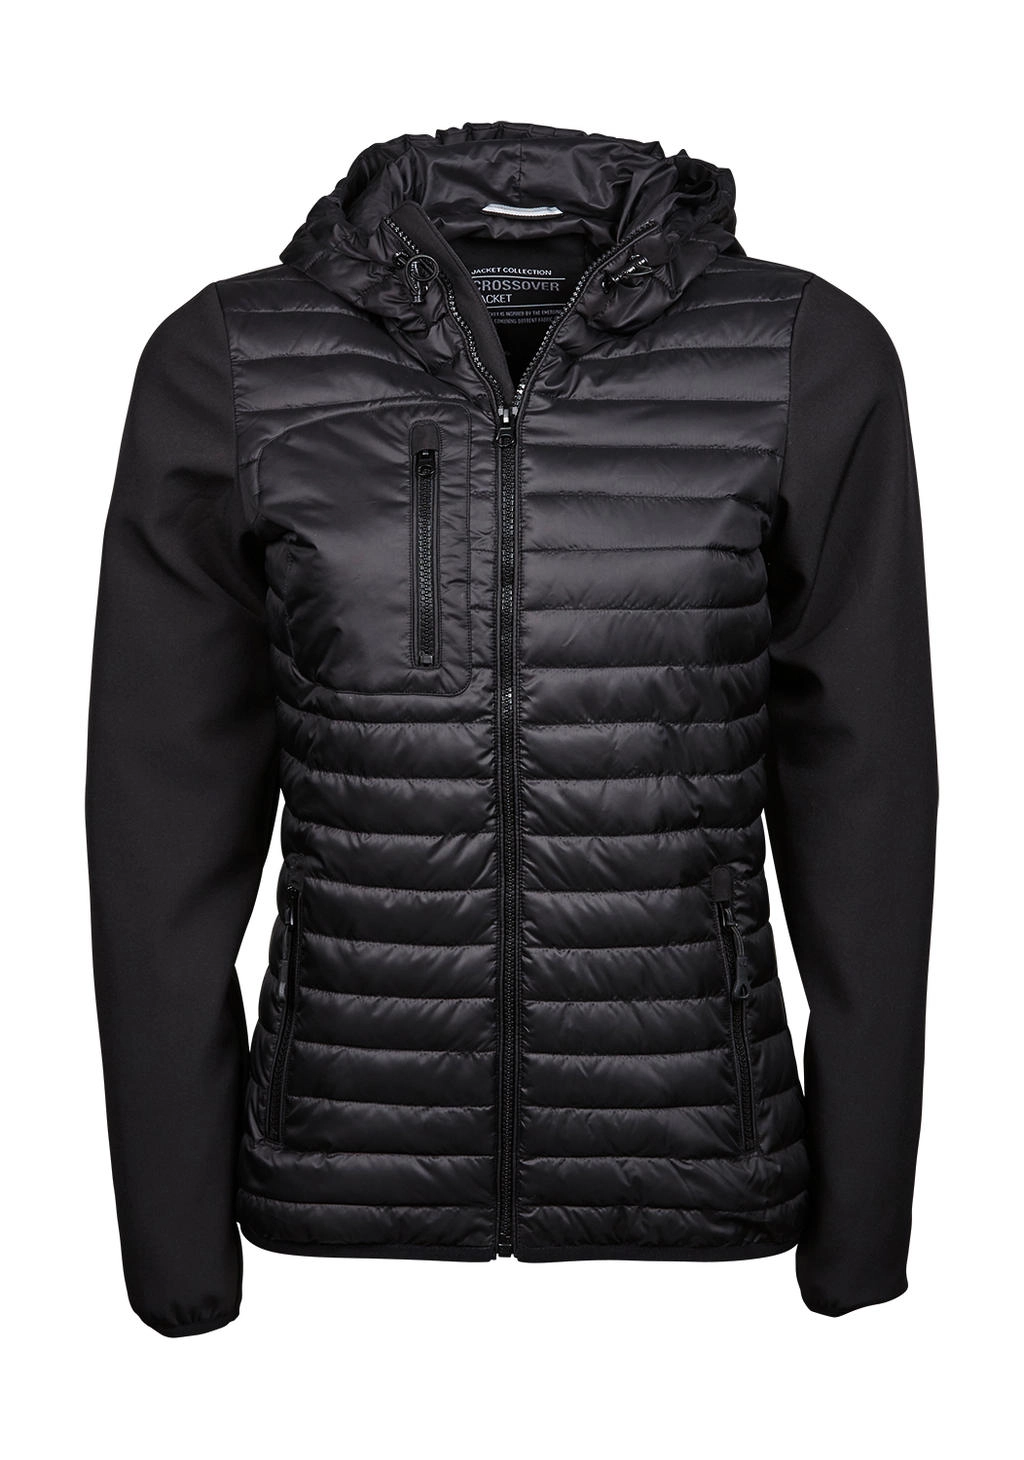 Ladies` Hooded Crossover Jacket zum Besticken und Bedrucken in der Farbe Black mit Ihren Logo, Schriftzug oder Motiv.